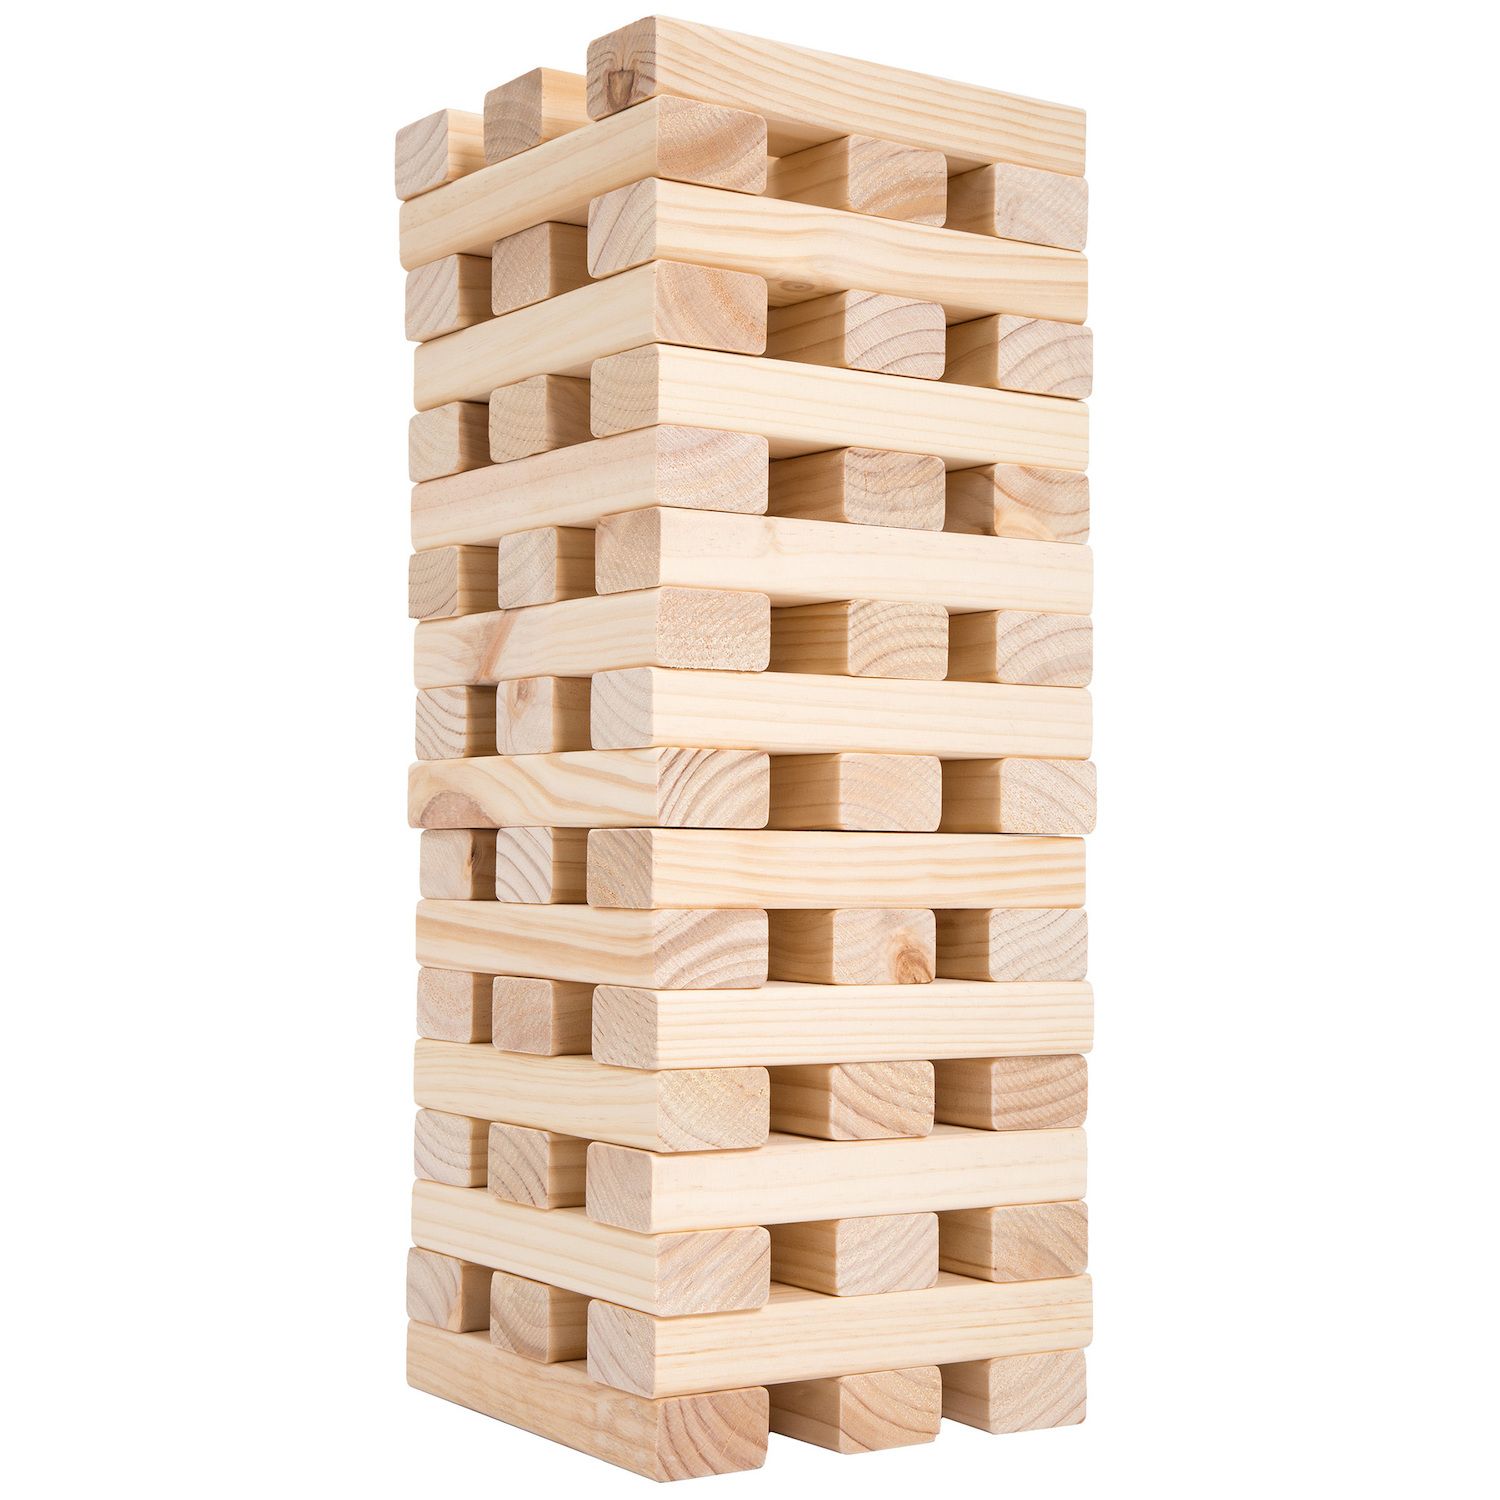 giant wooden blocks